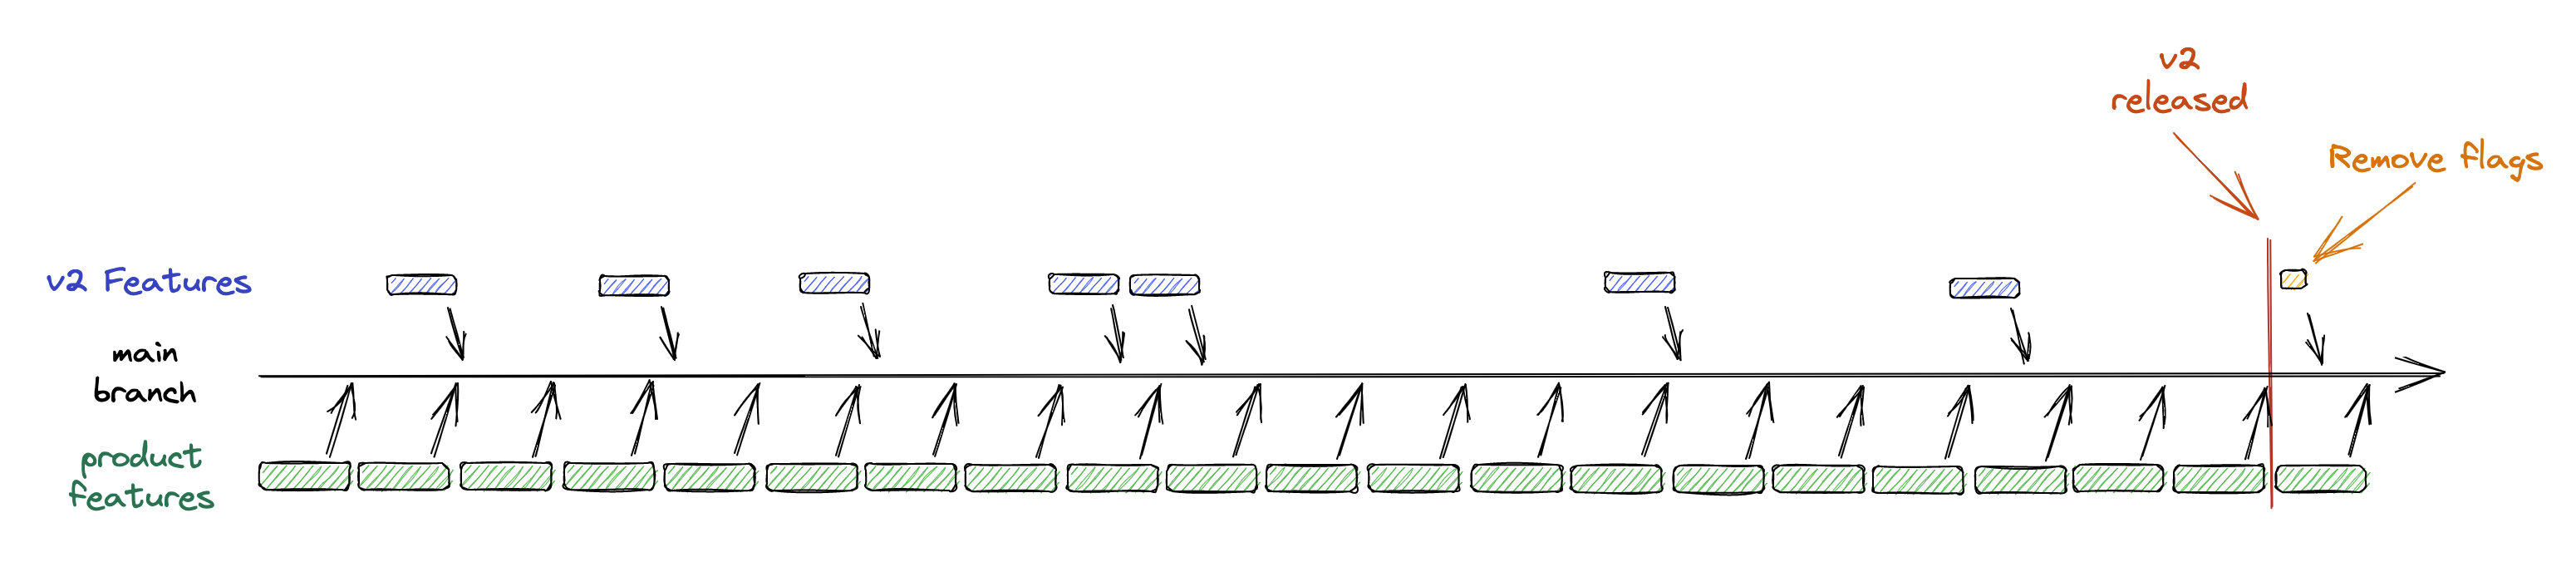 Diagram of the gradual adoption of v2 feature via future flags through the v1 lifetime